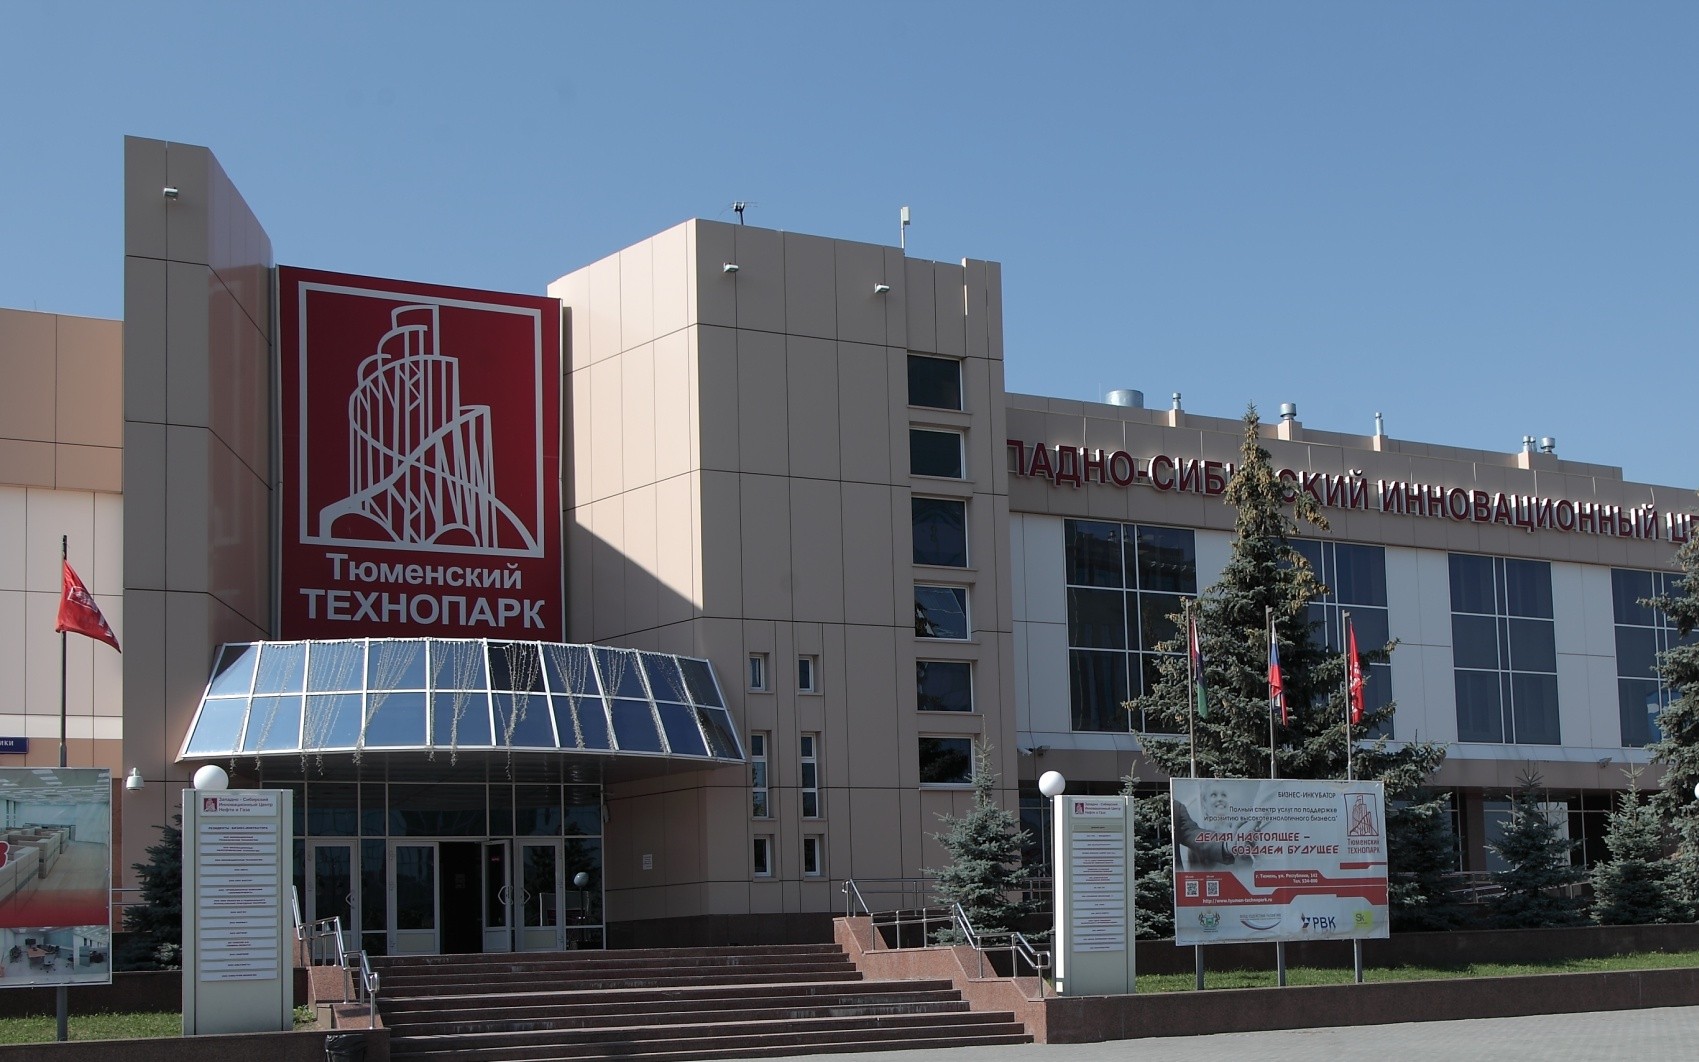 Благодаря ученым тюменского технопарка в Российской Федерации могут отказаться от бумажных журналов